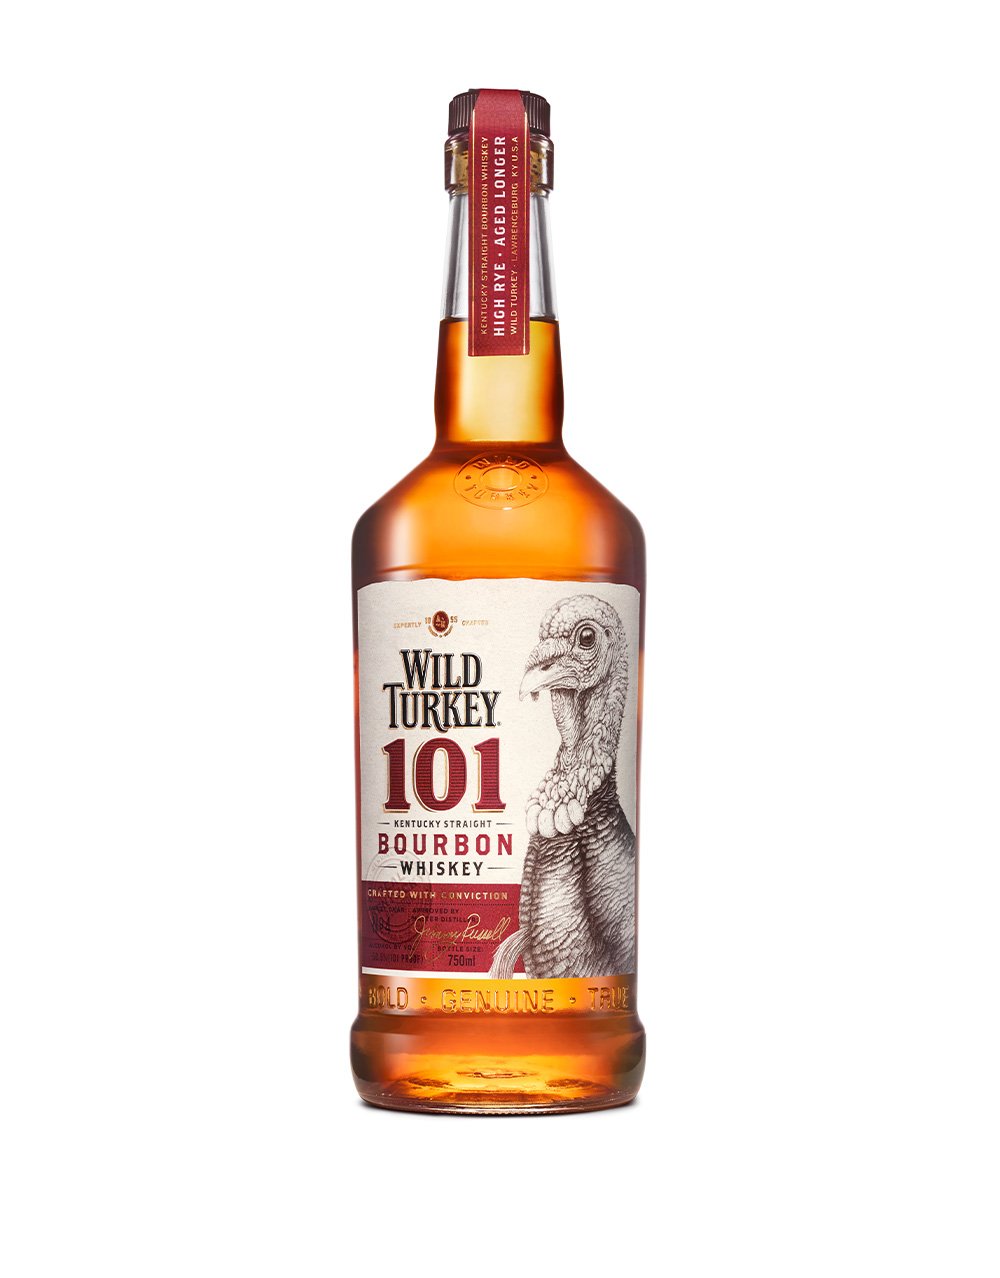 Wild Turkey 101 Bourbon bottle